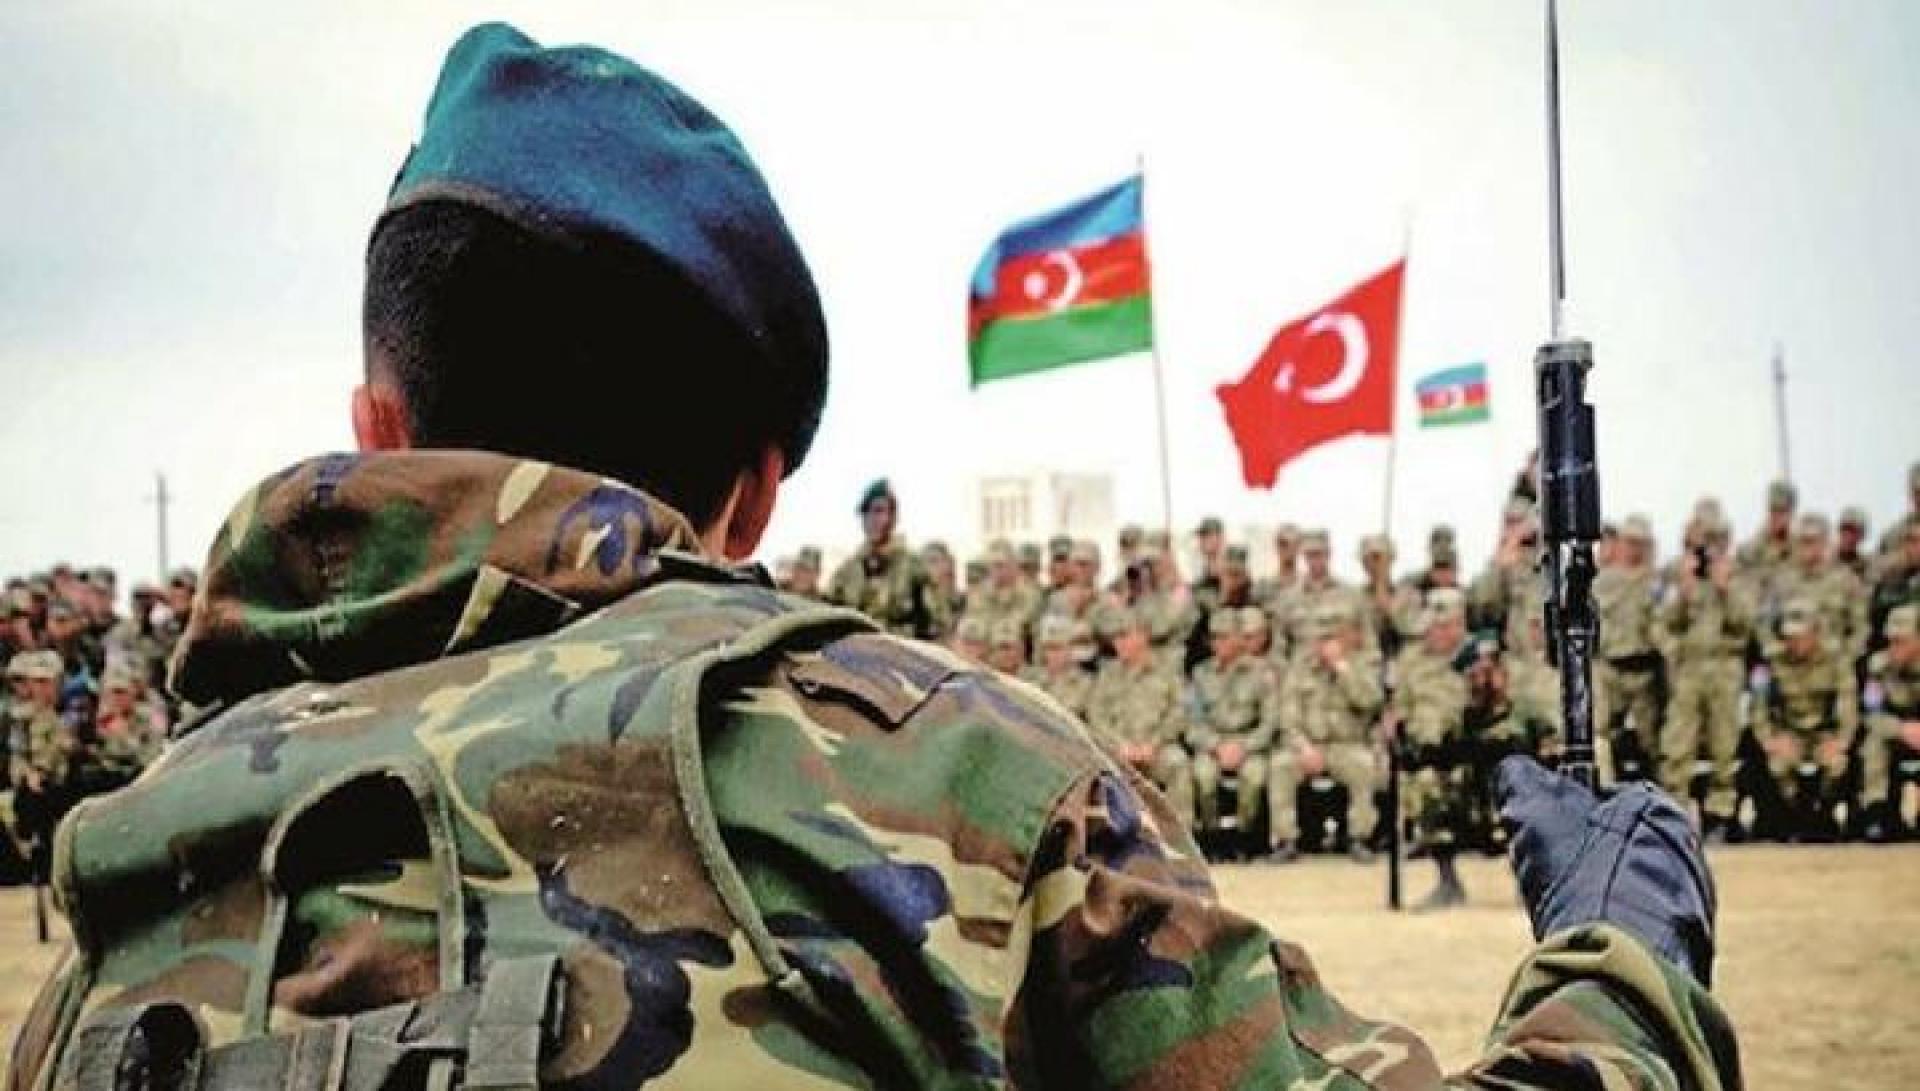 Ադրբեջանը և Թուրքիան համատեղ զորավարություններ կանցկացնեն Բաքվում, Նախիջևանում և օկուպացված Արցախի տարածքում